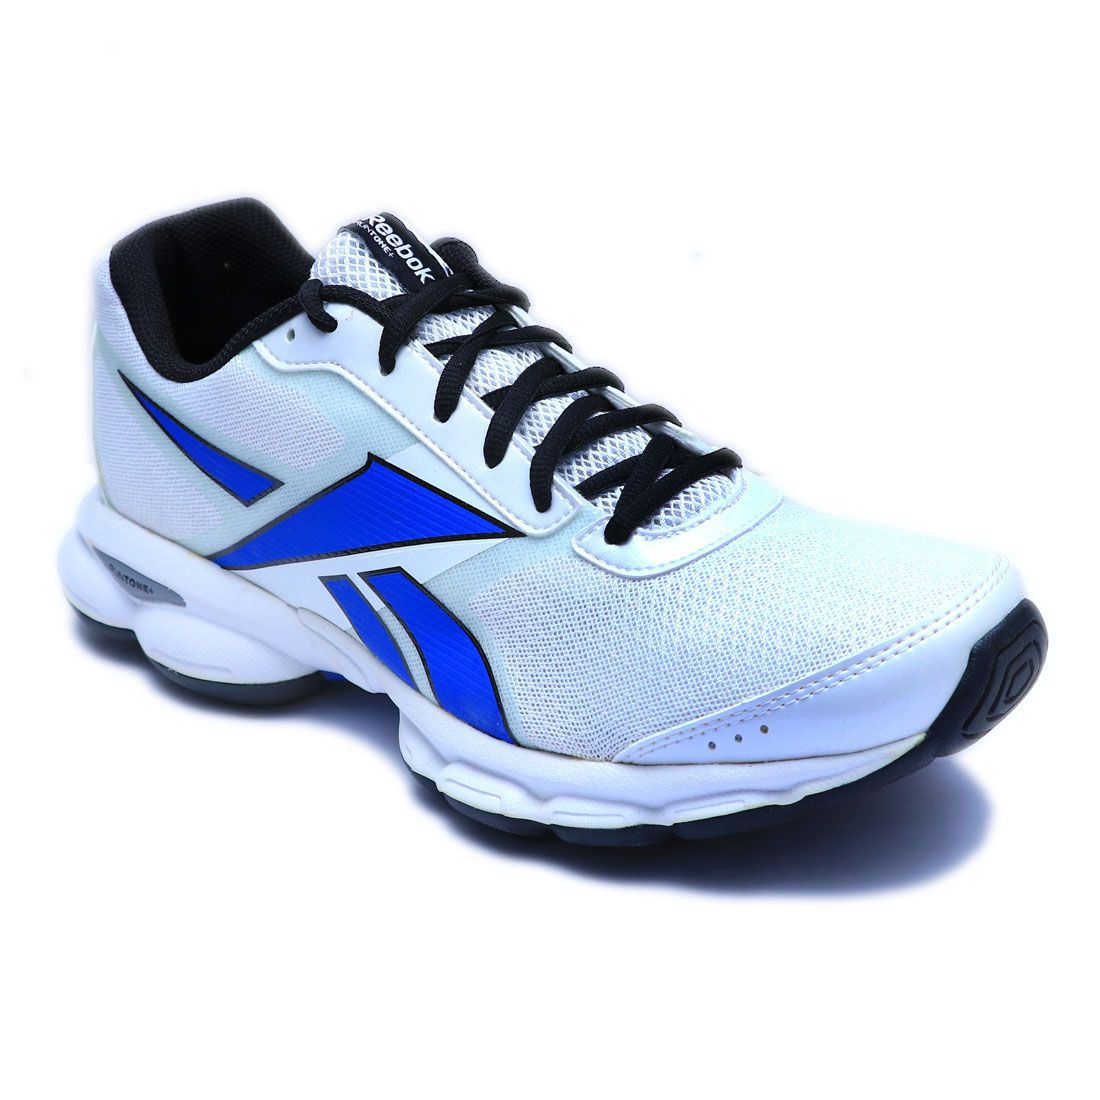 Reebok Runtone Plus Trainer White Running Shoes